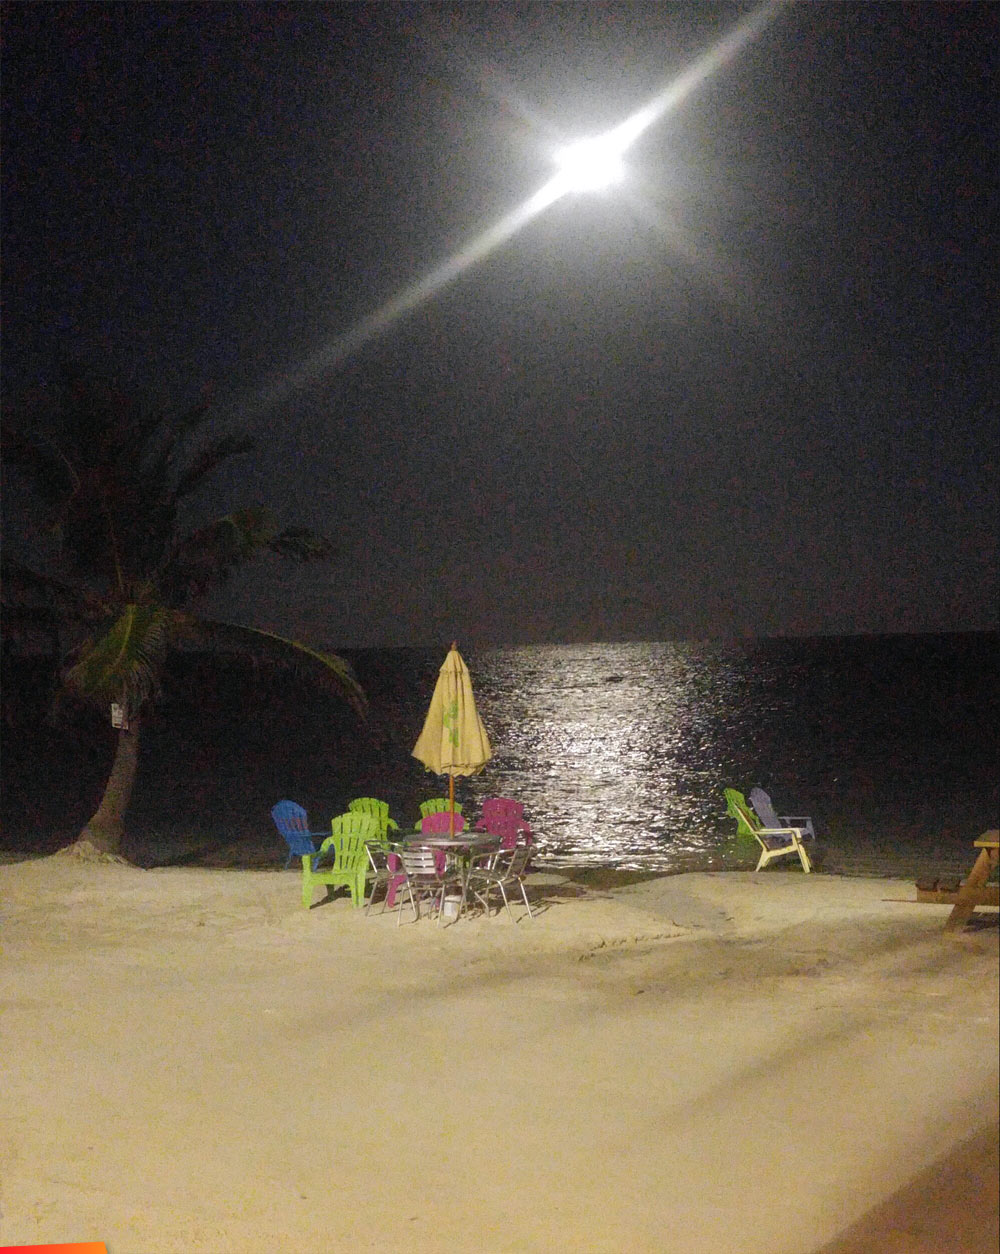 Super moon at Boca del Rio